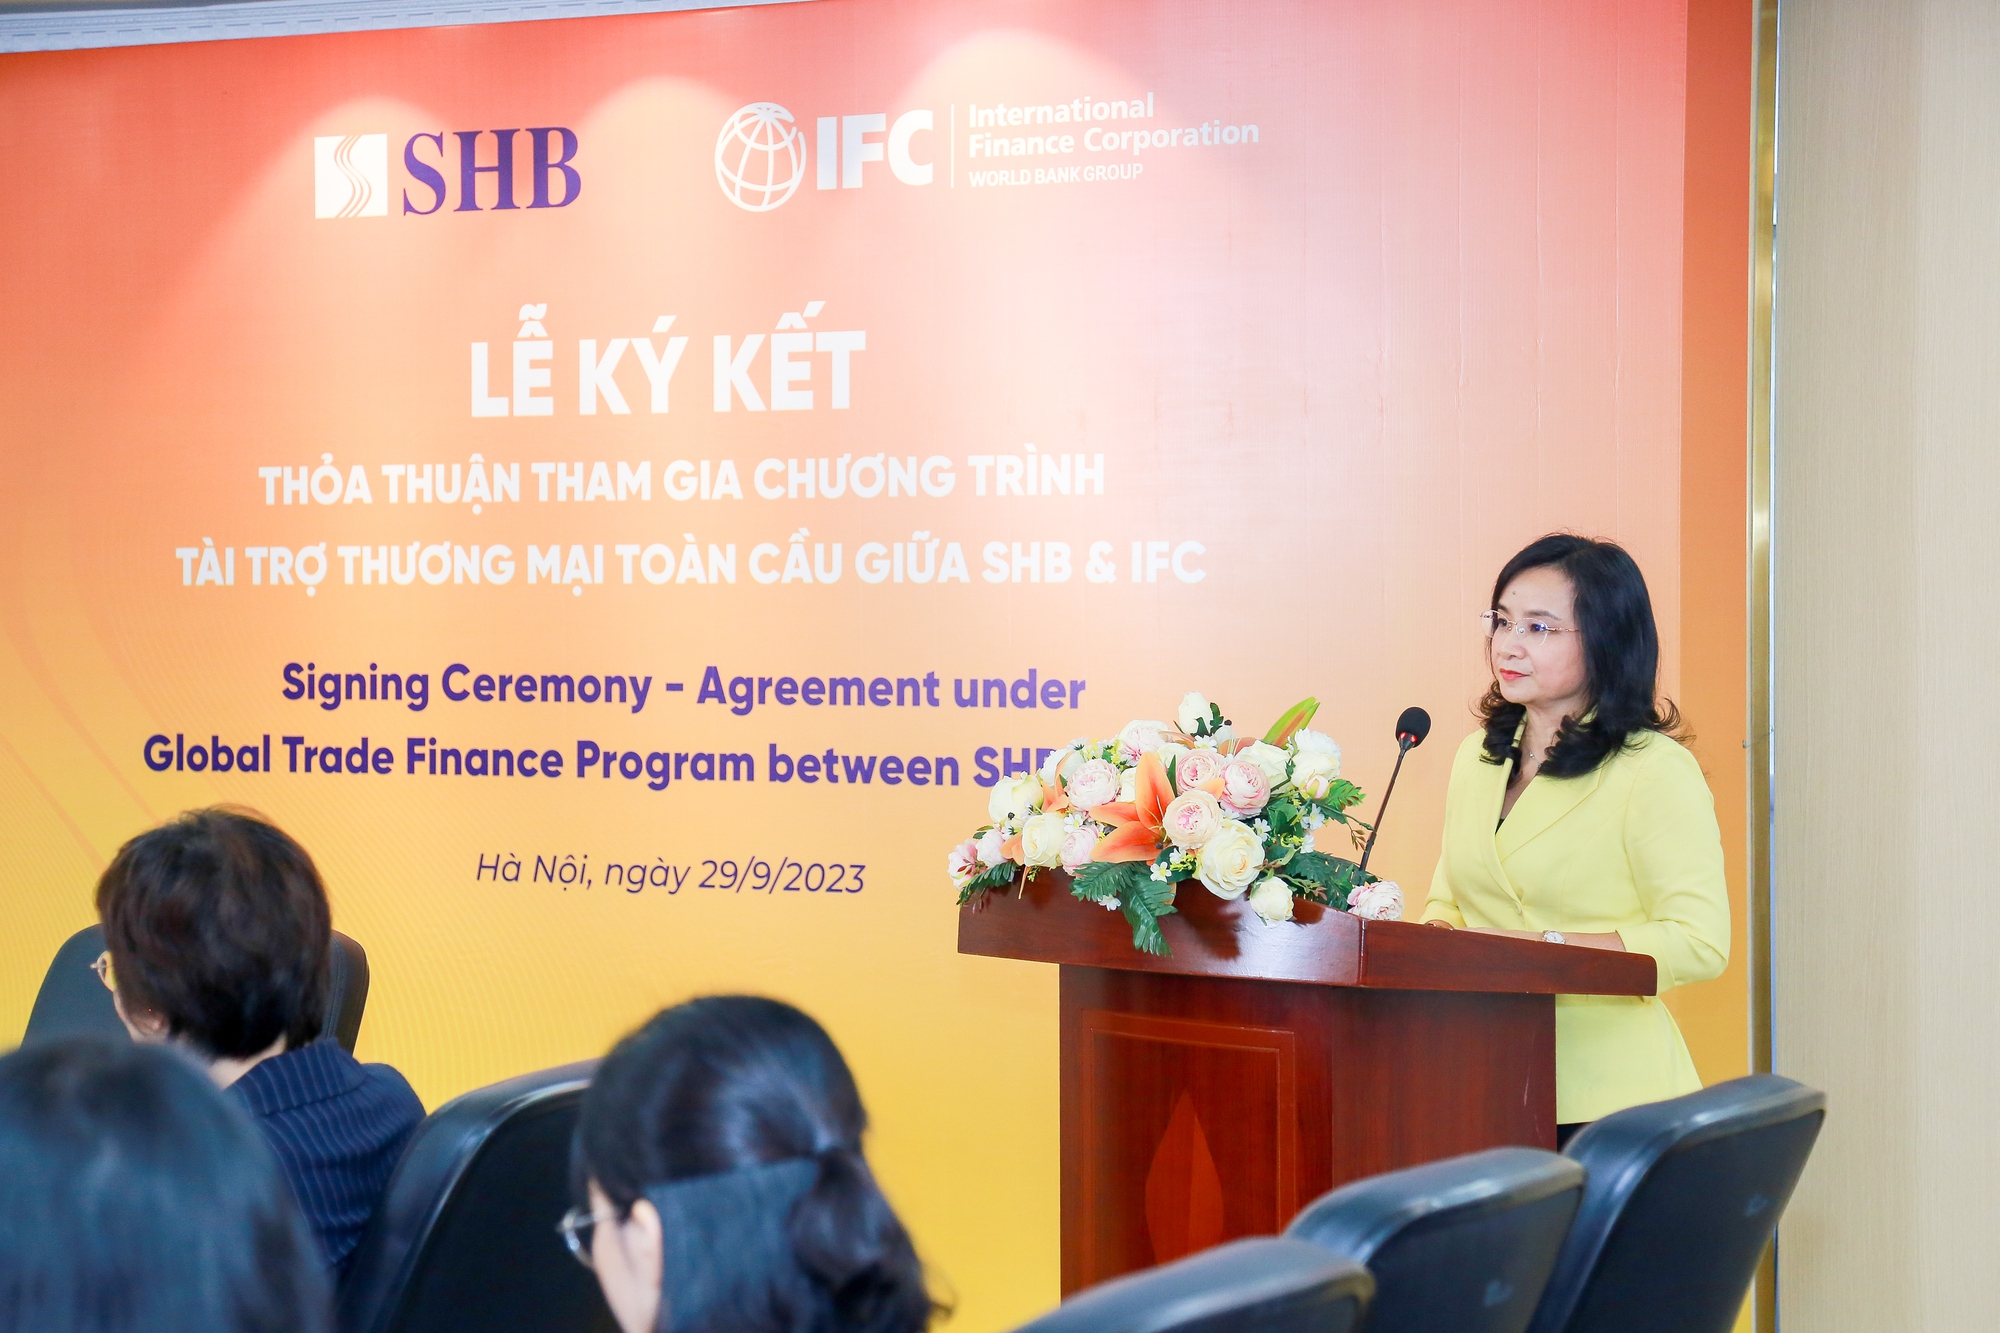 Tổng Giám đốc Ngô Thu Hà chia sẻ SHB sẽ tiếp tục nâng cao hơn nữa năng lực cho vay doanh nghiệp vừa và nhỏ, doanh nghiệp nữ chủ và phát triển các dự án xanh ở Việt Nam.